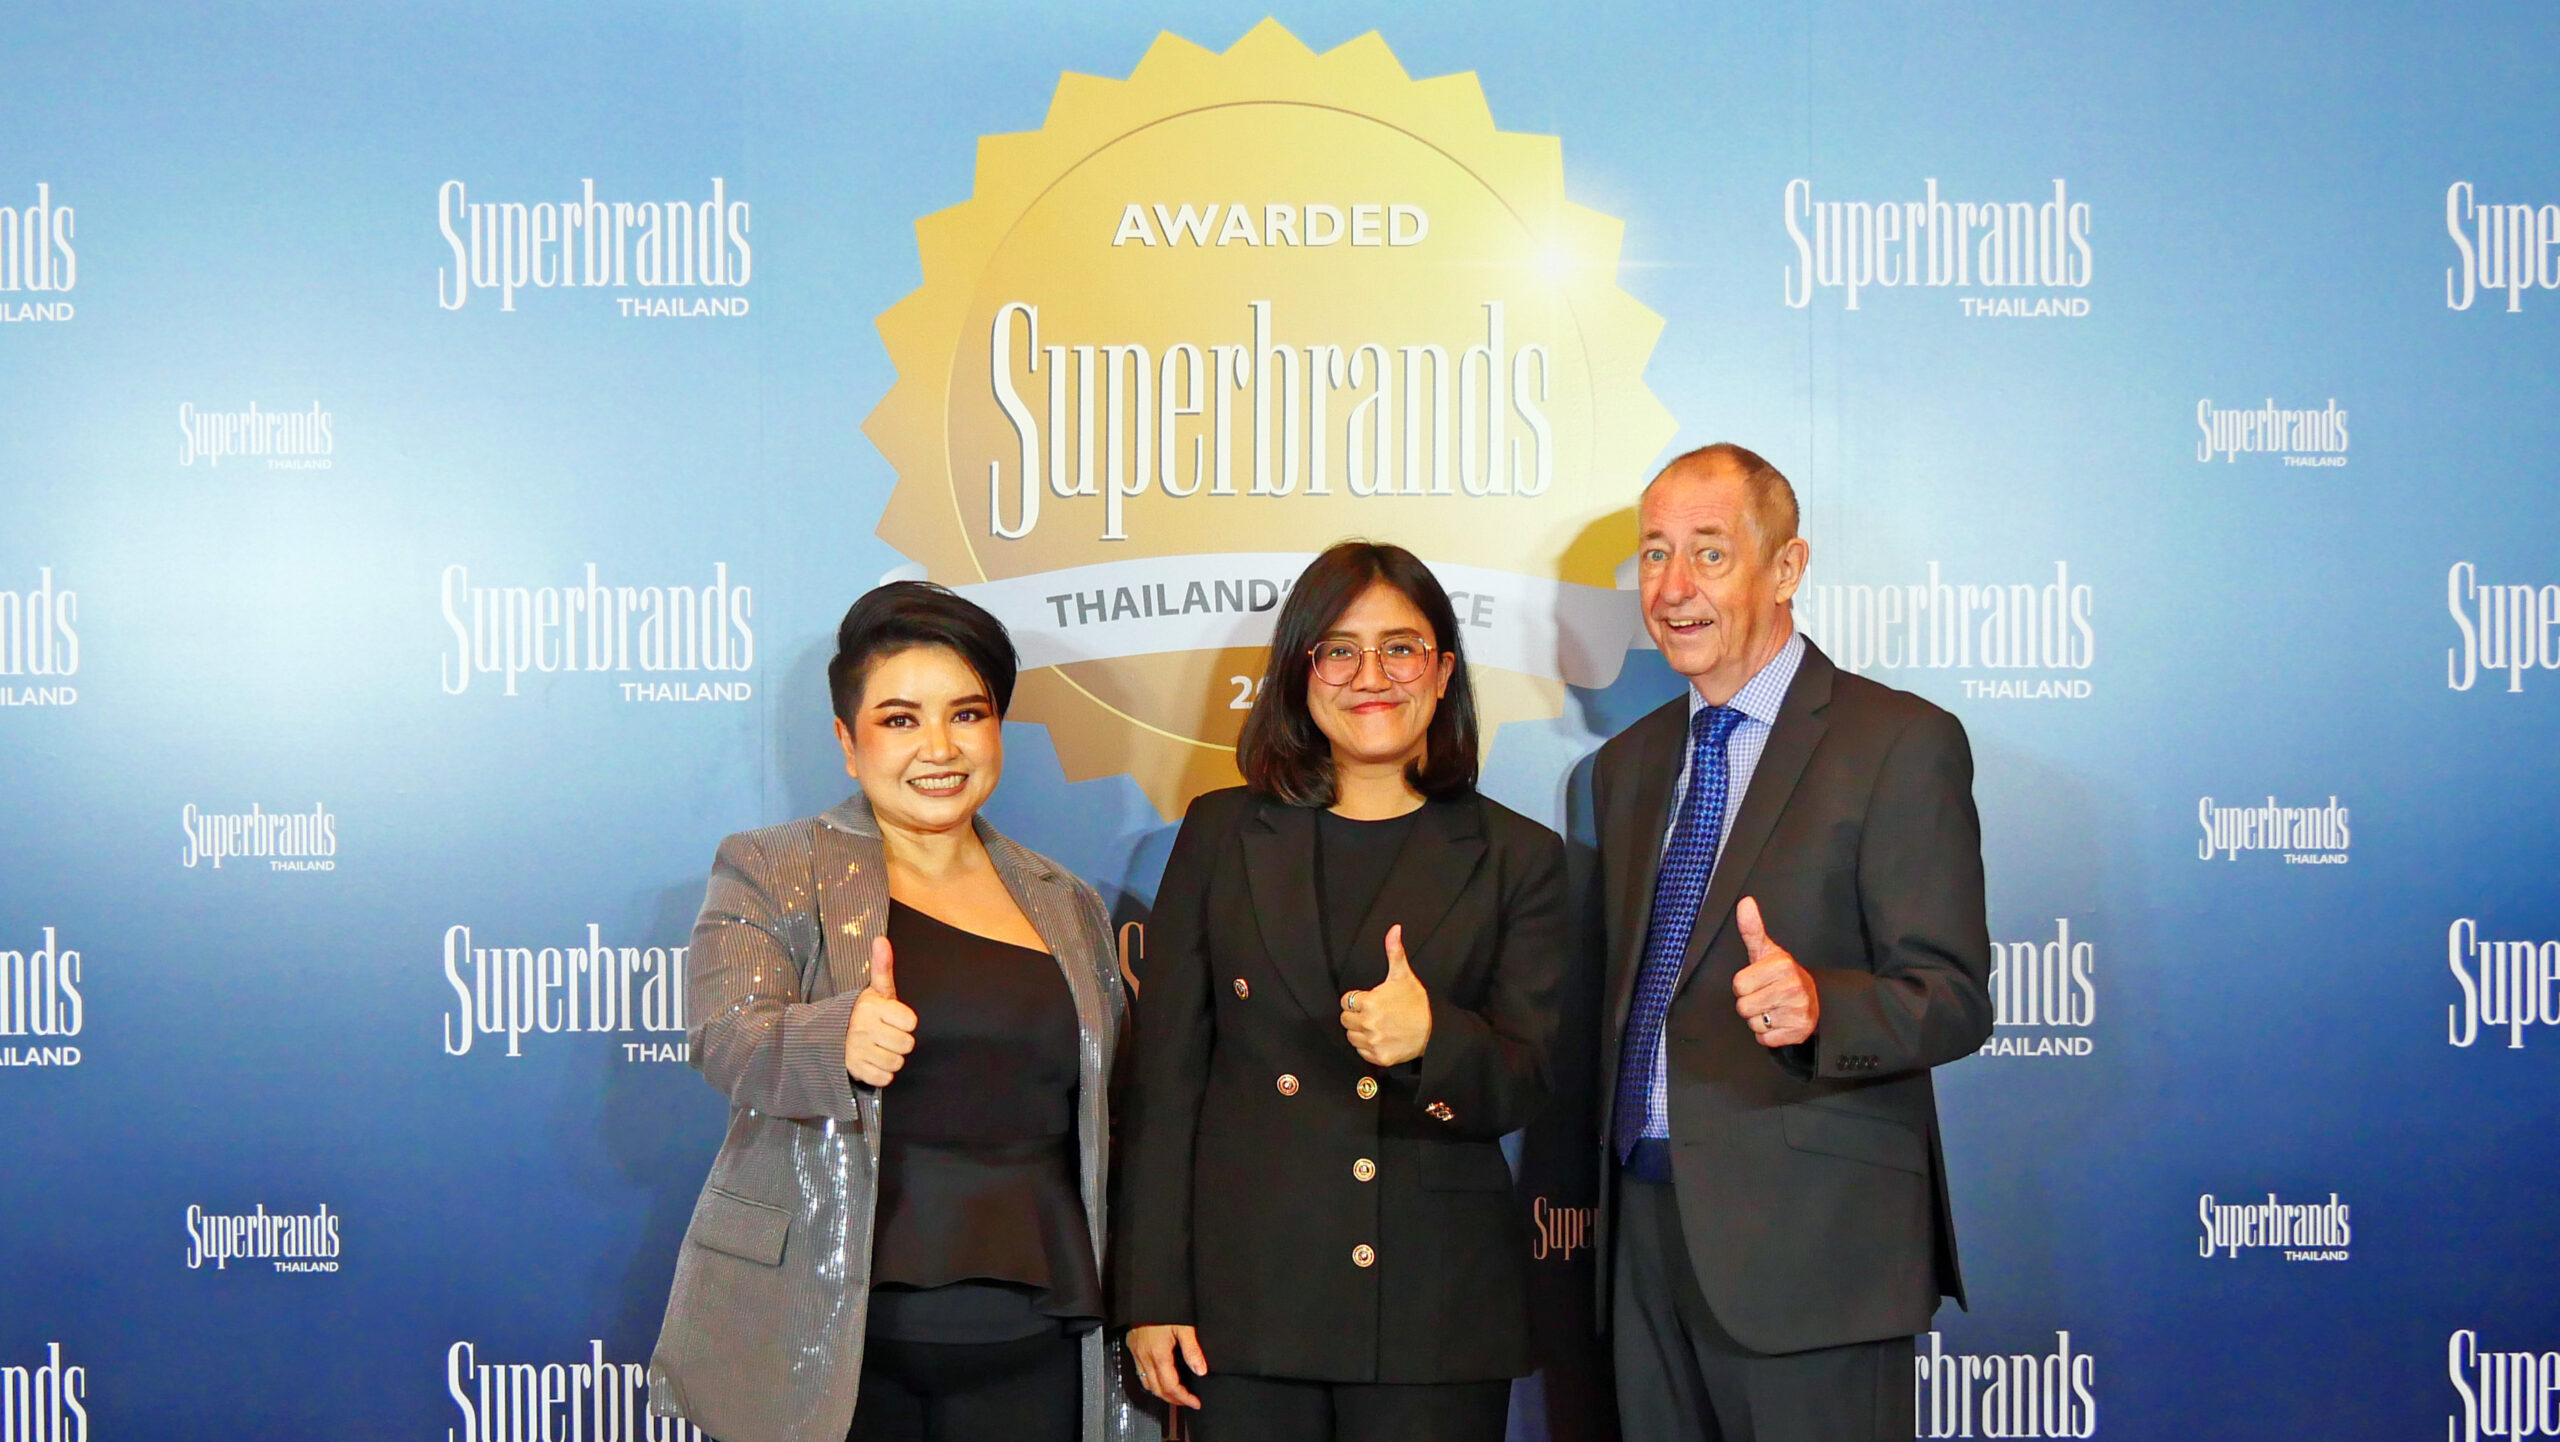 สุดปัง! “ไฮเออร์” คว้ารางวัลสุดยอดแบรนด์แห่งปี 4 ปีซ้อน จาก “Superbrands Thailand”